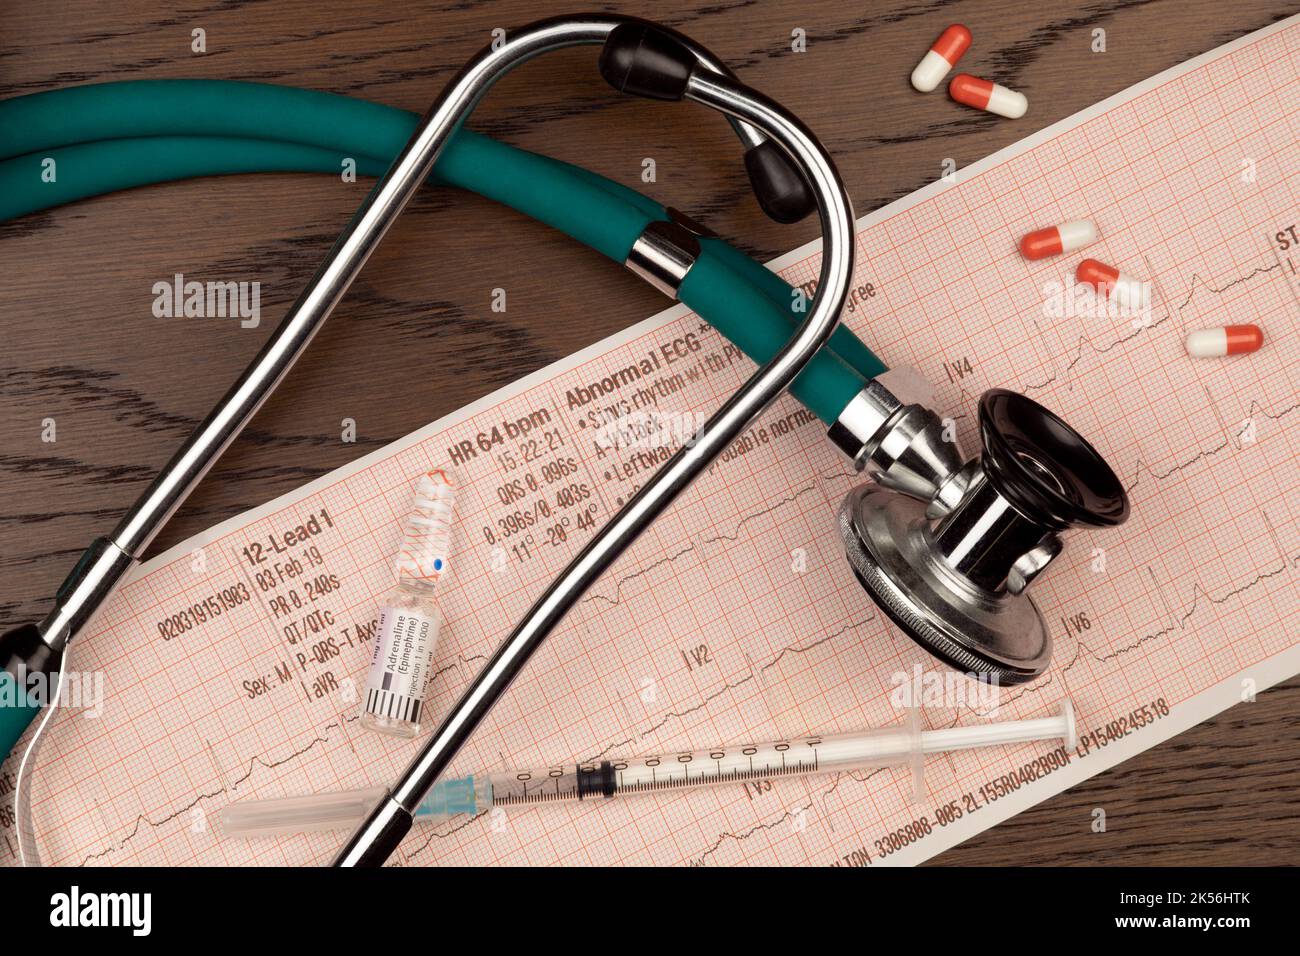 Traitement médical - stéthoscope des médecins, injection d'adrénaline et tracé ECG. Banque D'Images